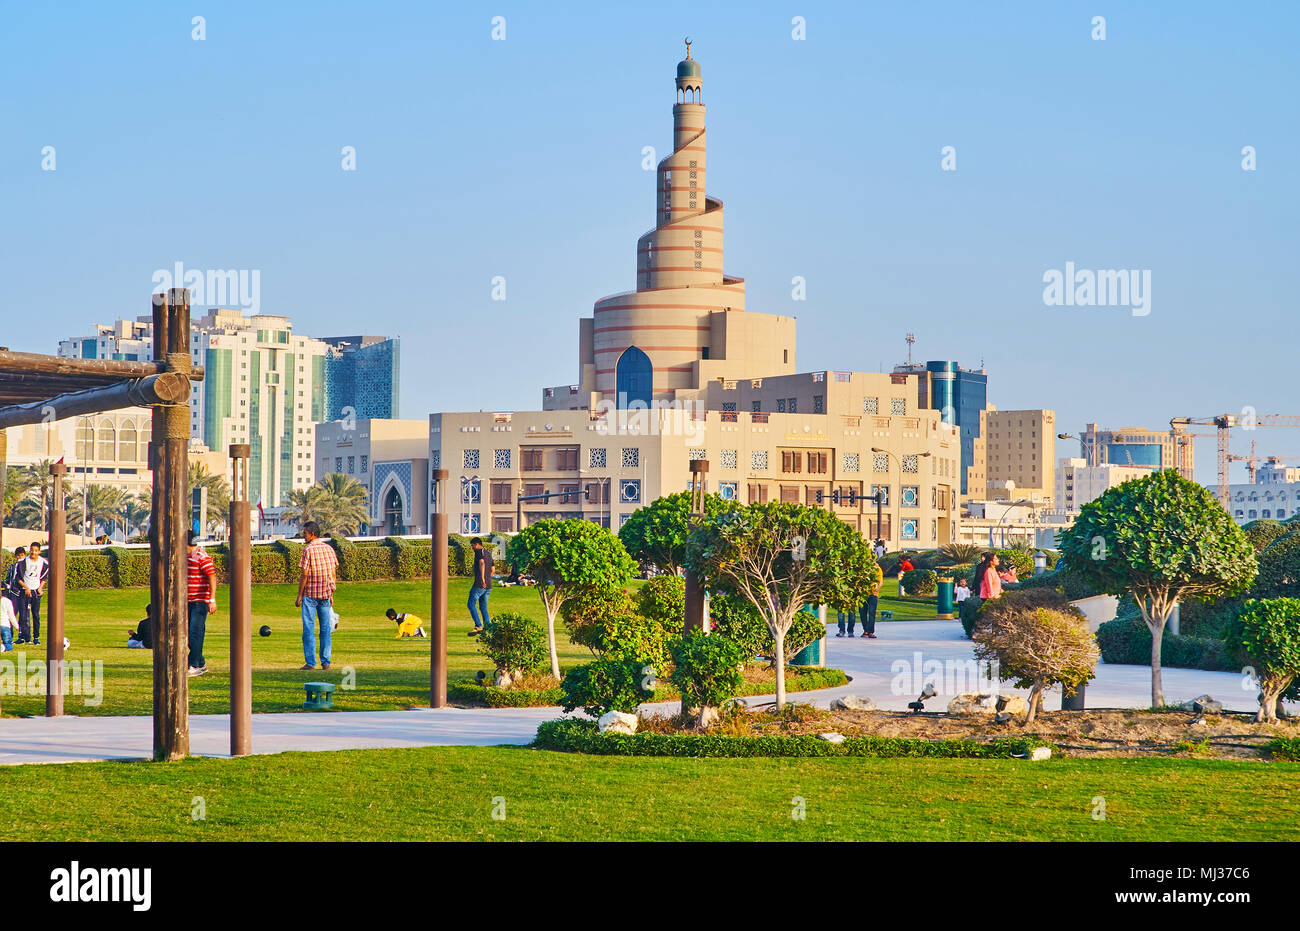 DOHA, Katar - 13. FEBRUAR 2018: die Menschen laufen und spielen in Souq Waqif park mit Spirale Minarett der Moschee Al Fanar auf Hintergrund, am 13. Februar in Stockfoto